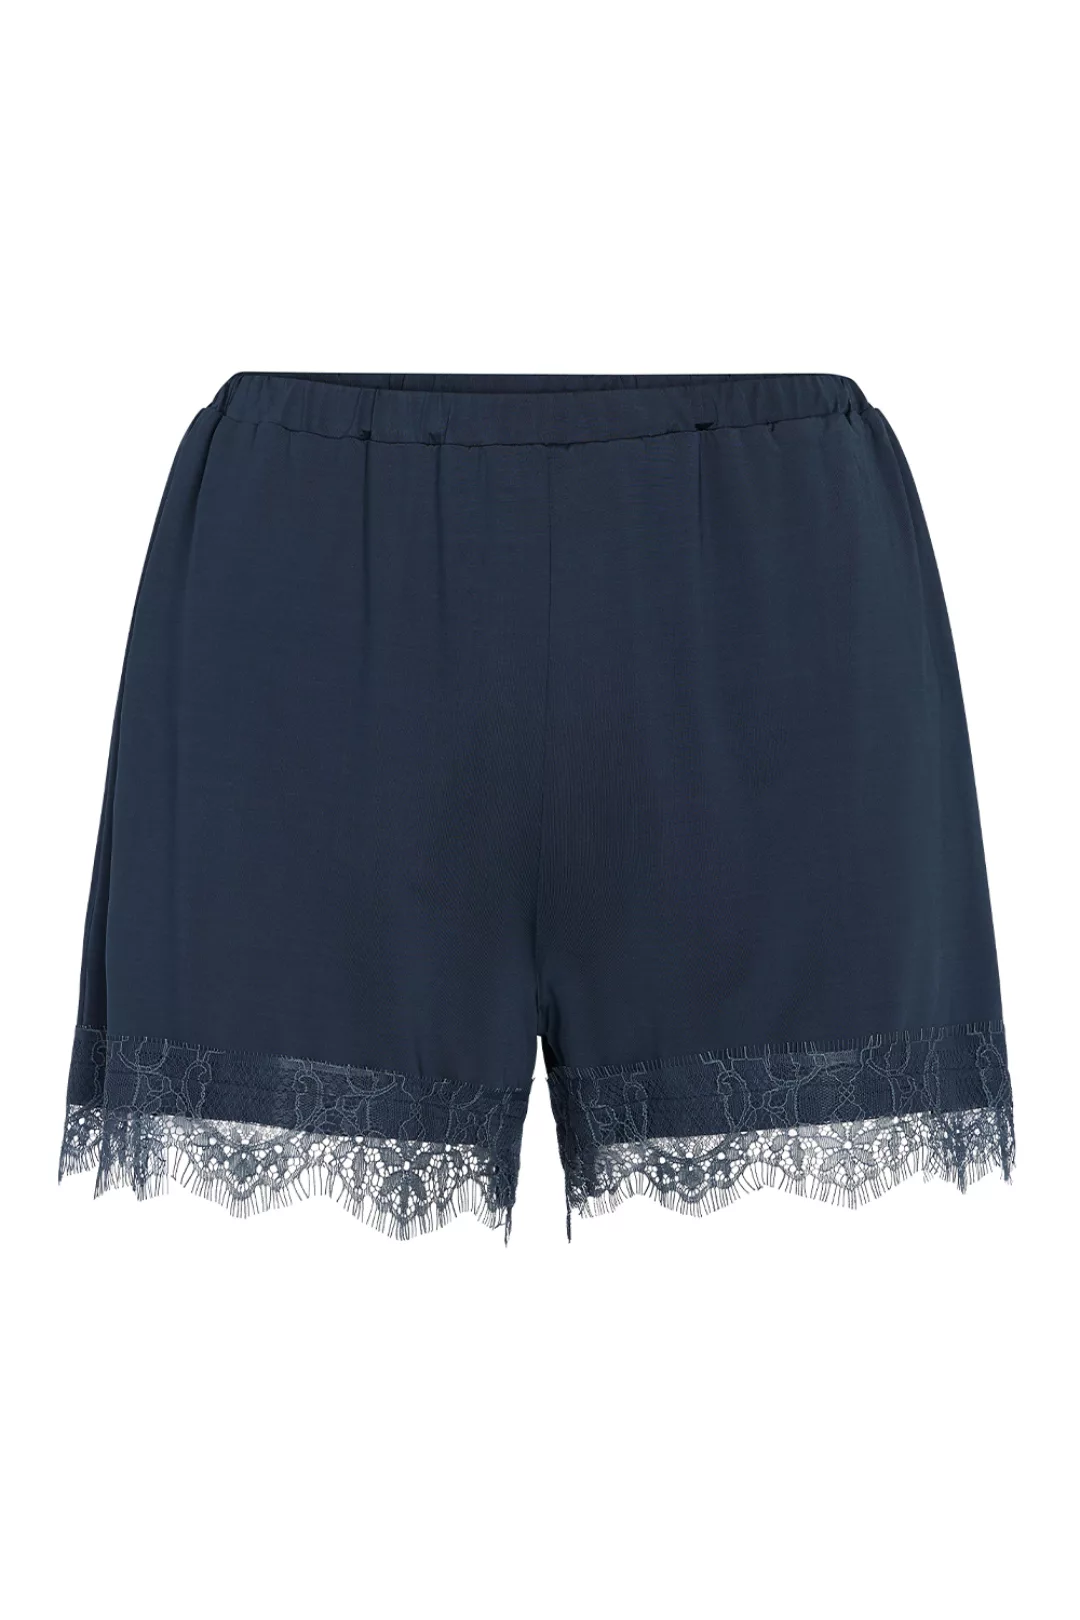 ESSENZA Natalie Uni Shorts Loungewear 4 40 blau günstig online kaufen